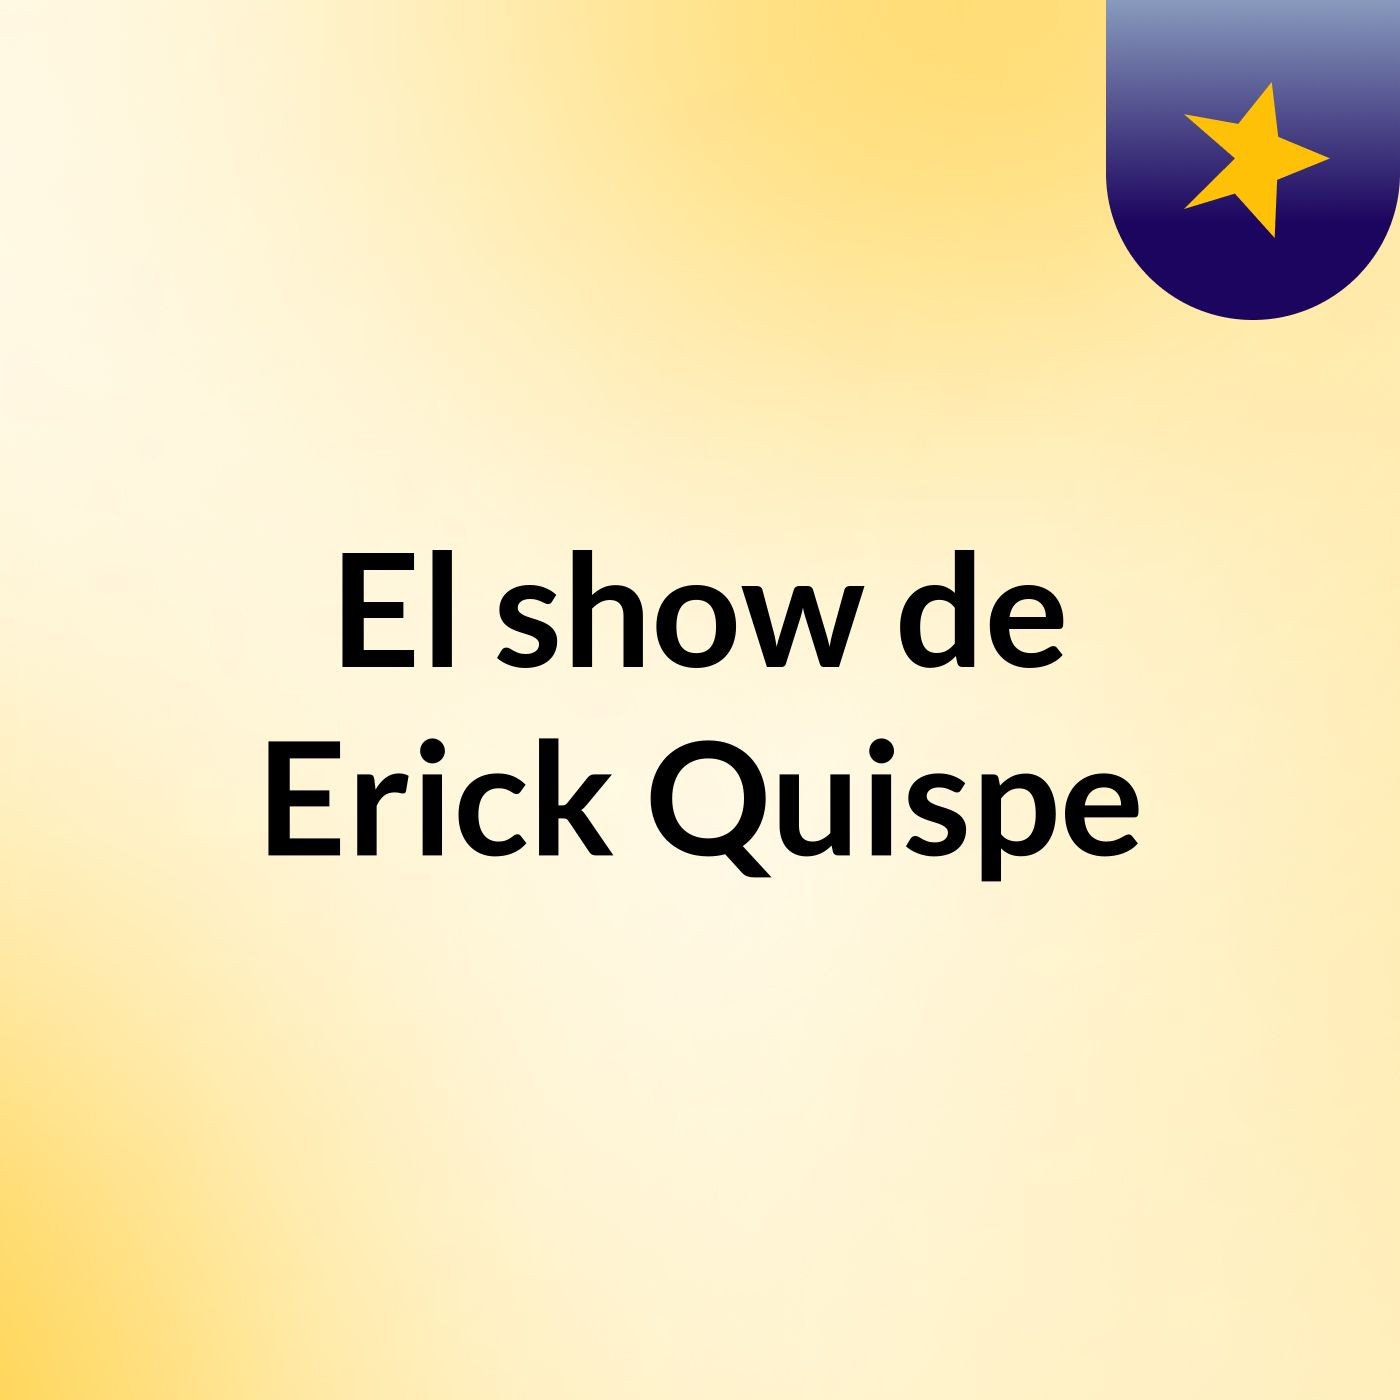 El show de Erick Quispe